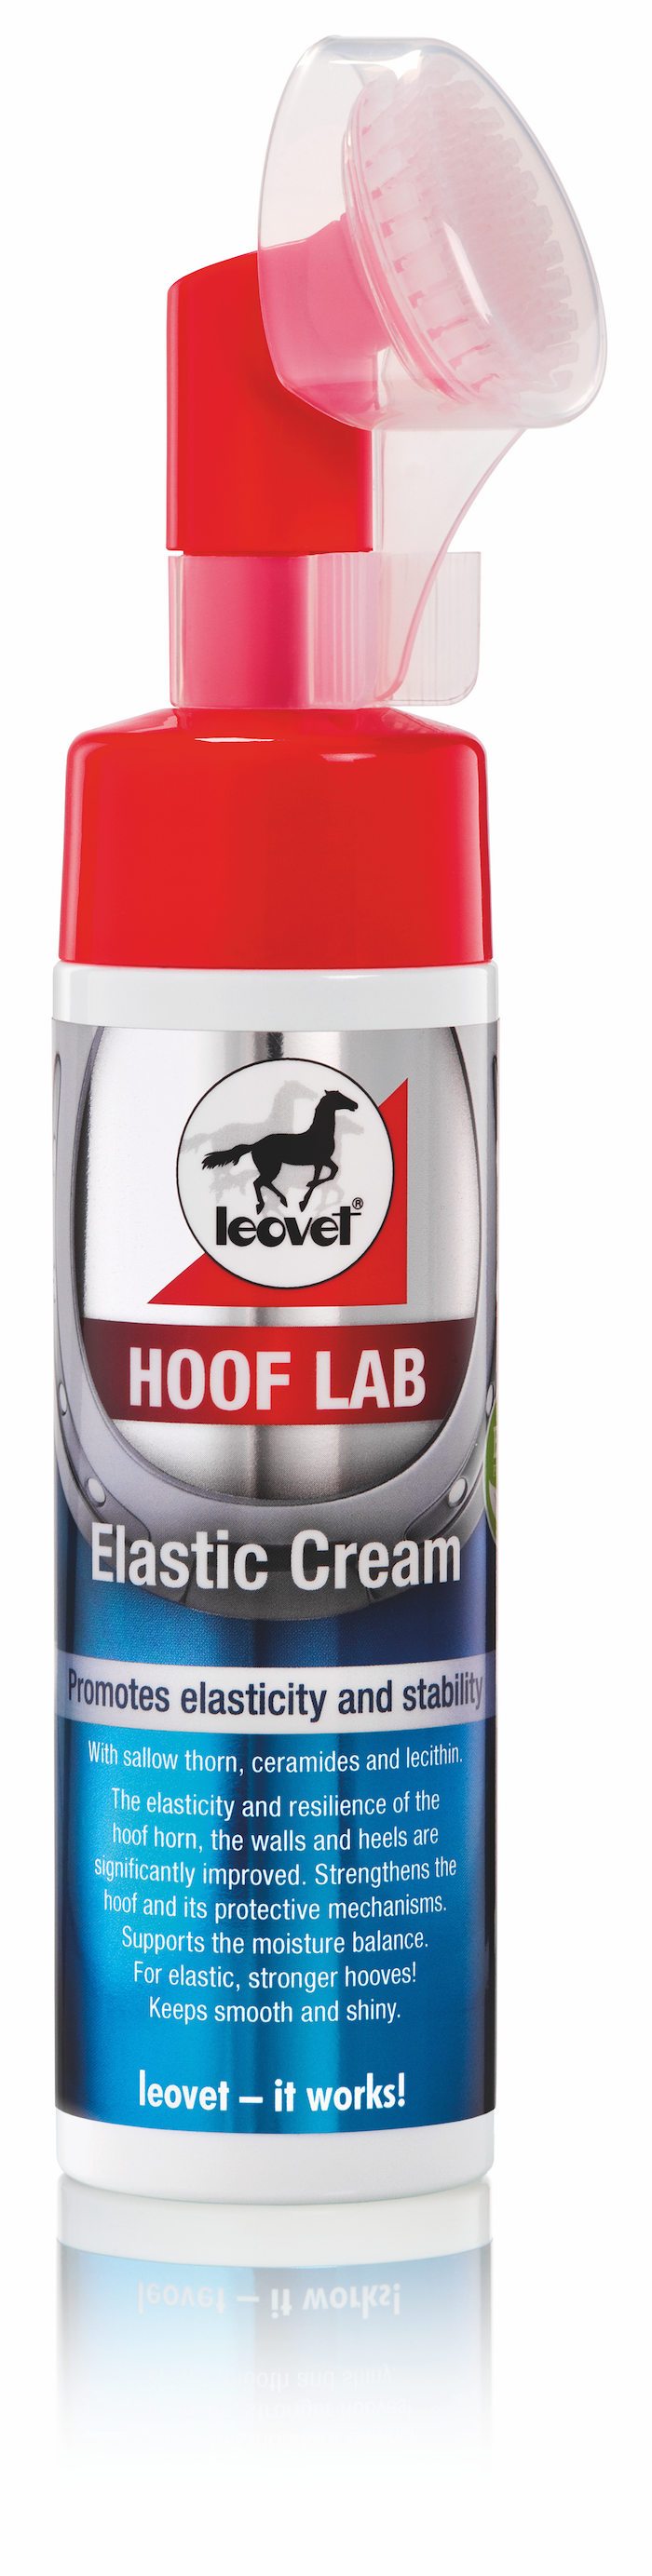 Leovet HOOF LAB Elastic Cream_0318 copy